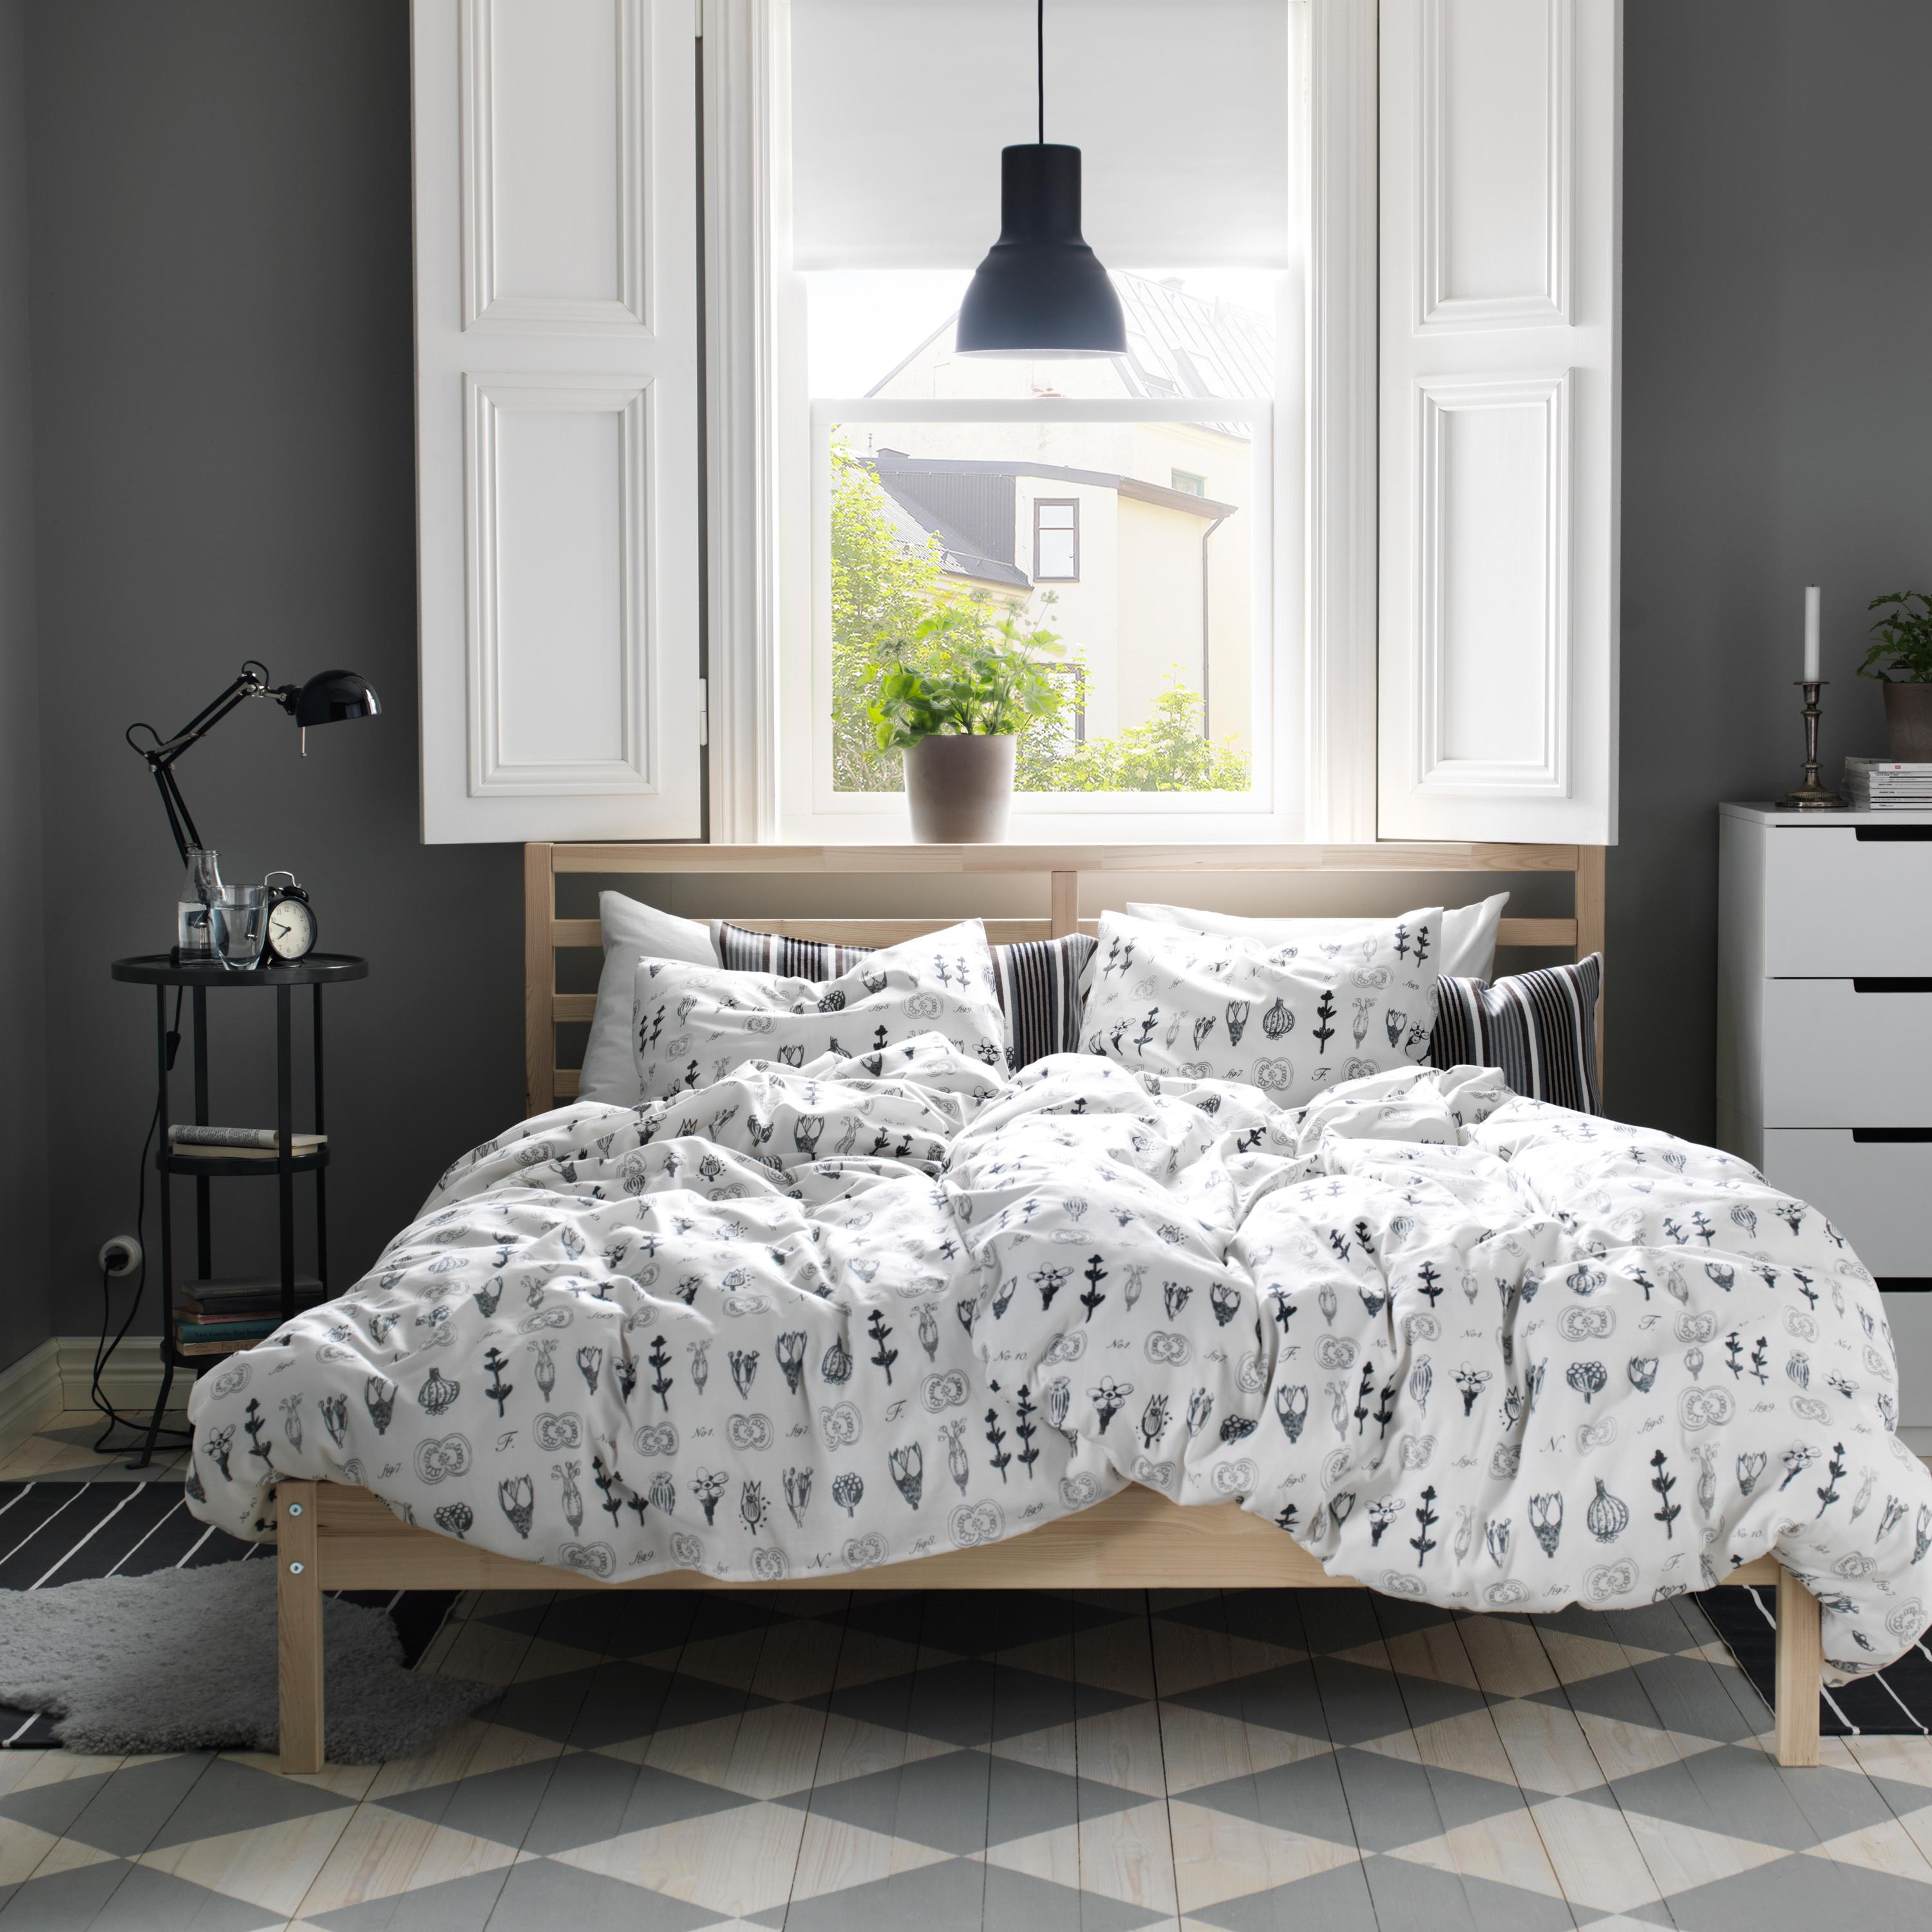 Bett aus Kiefer im klassischen Schlafzimmer #hängeleuchte #schwarzehängeleuchte #anthrazitwandfarbe ©Inter Ikea Systems B.V.